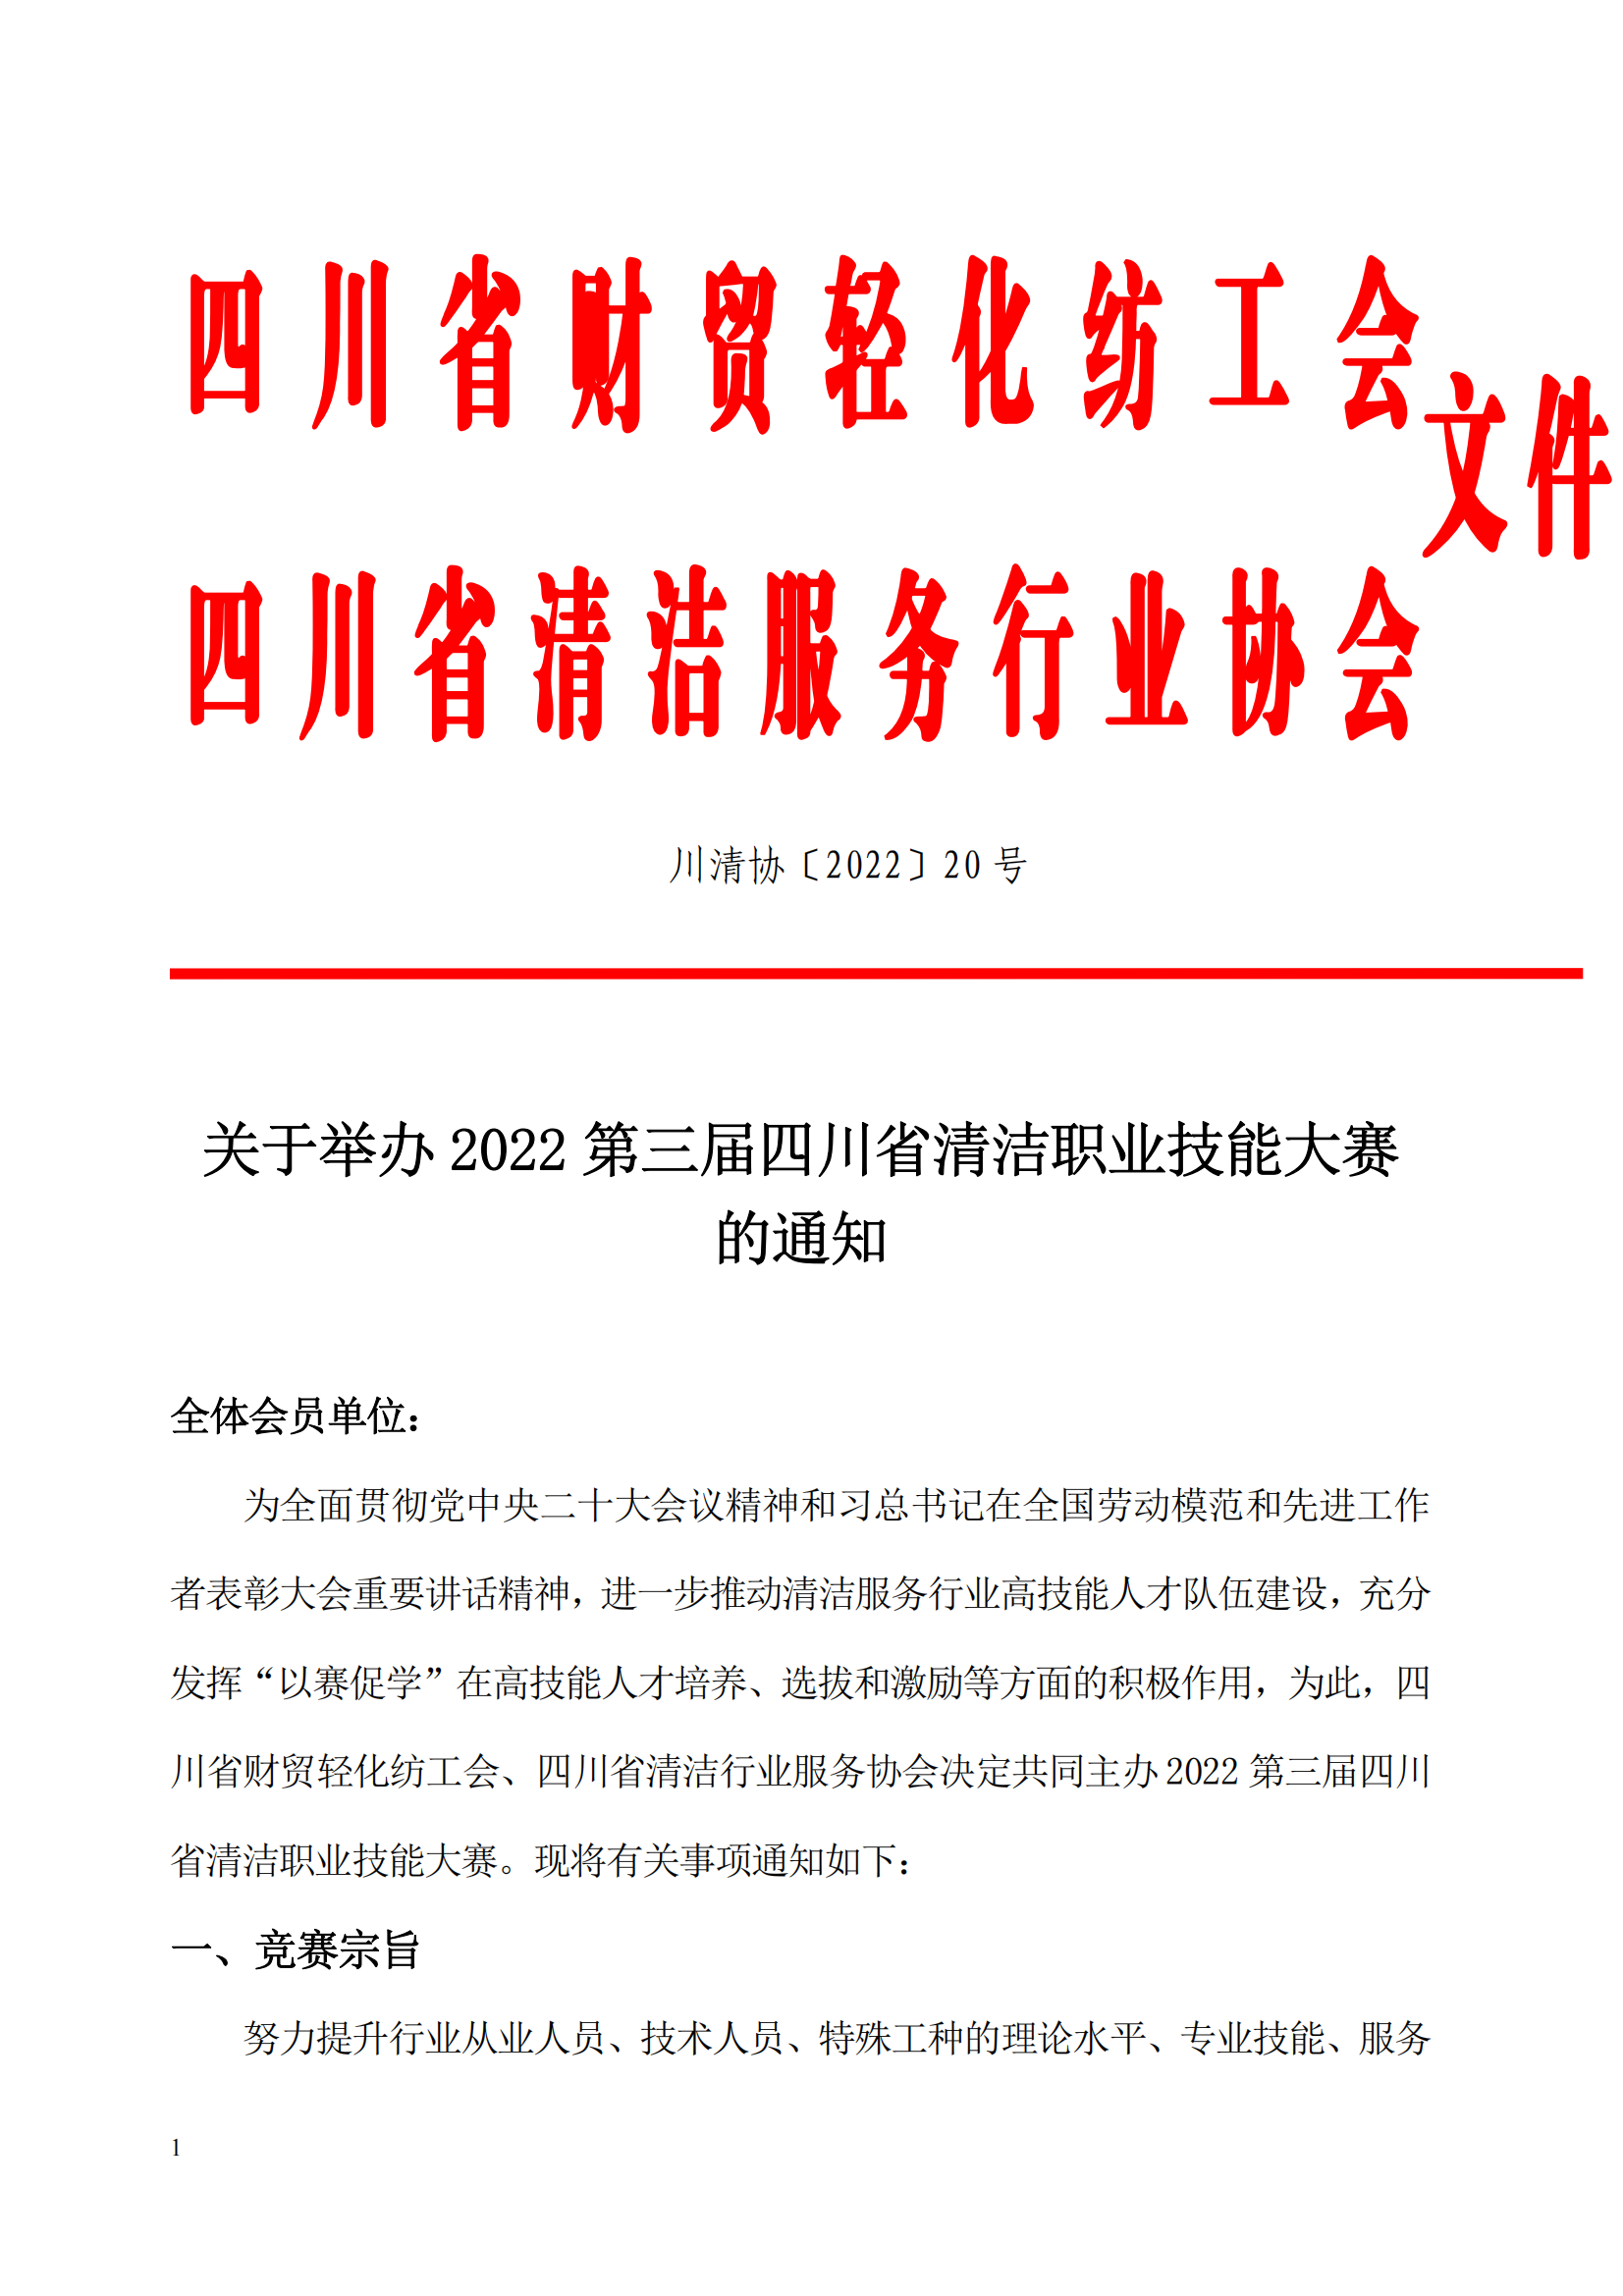 关于举办 2022 第三届四川省清洁职业技能大赛的通知